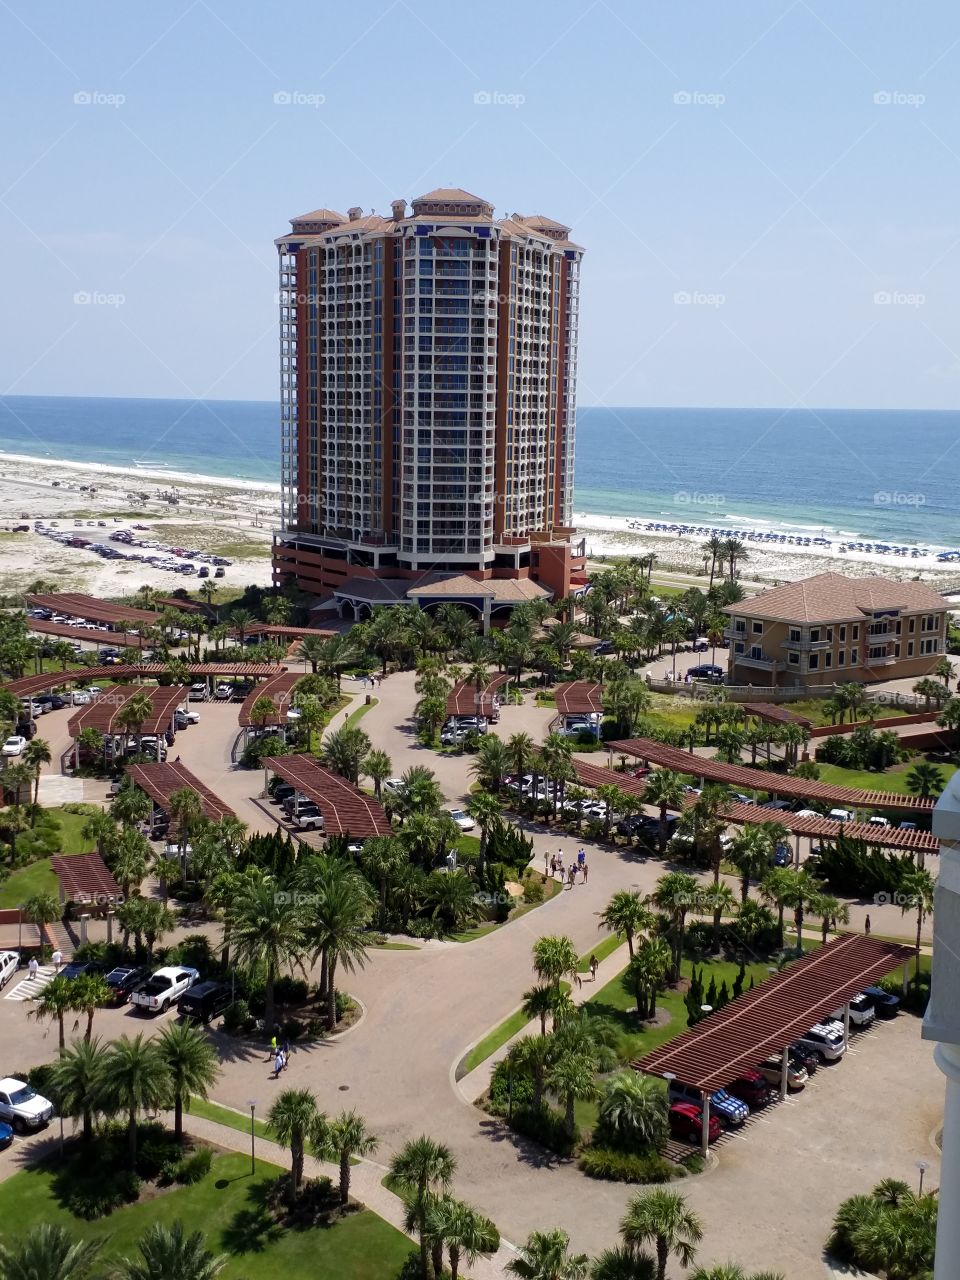 Vacation rental condo resort at Florida beach